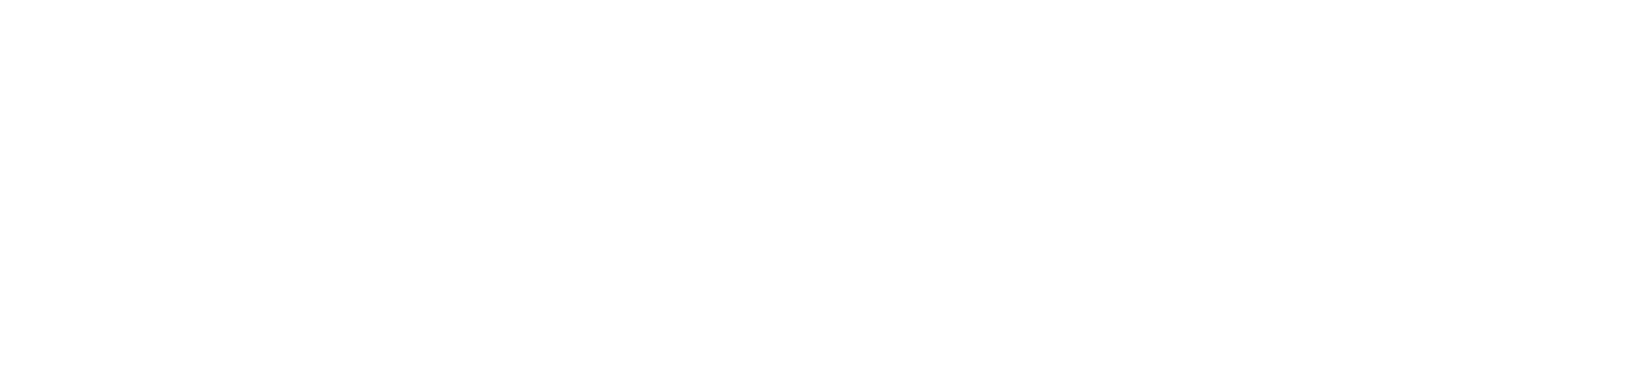 Auctus IQ logo